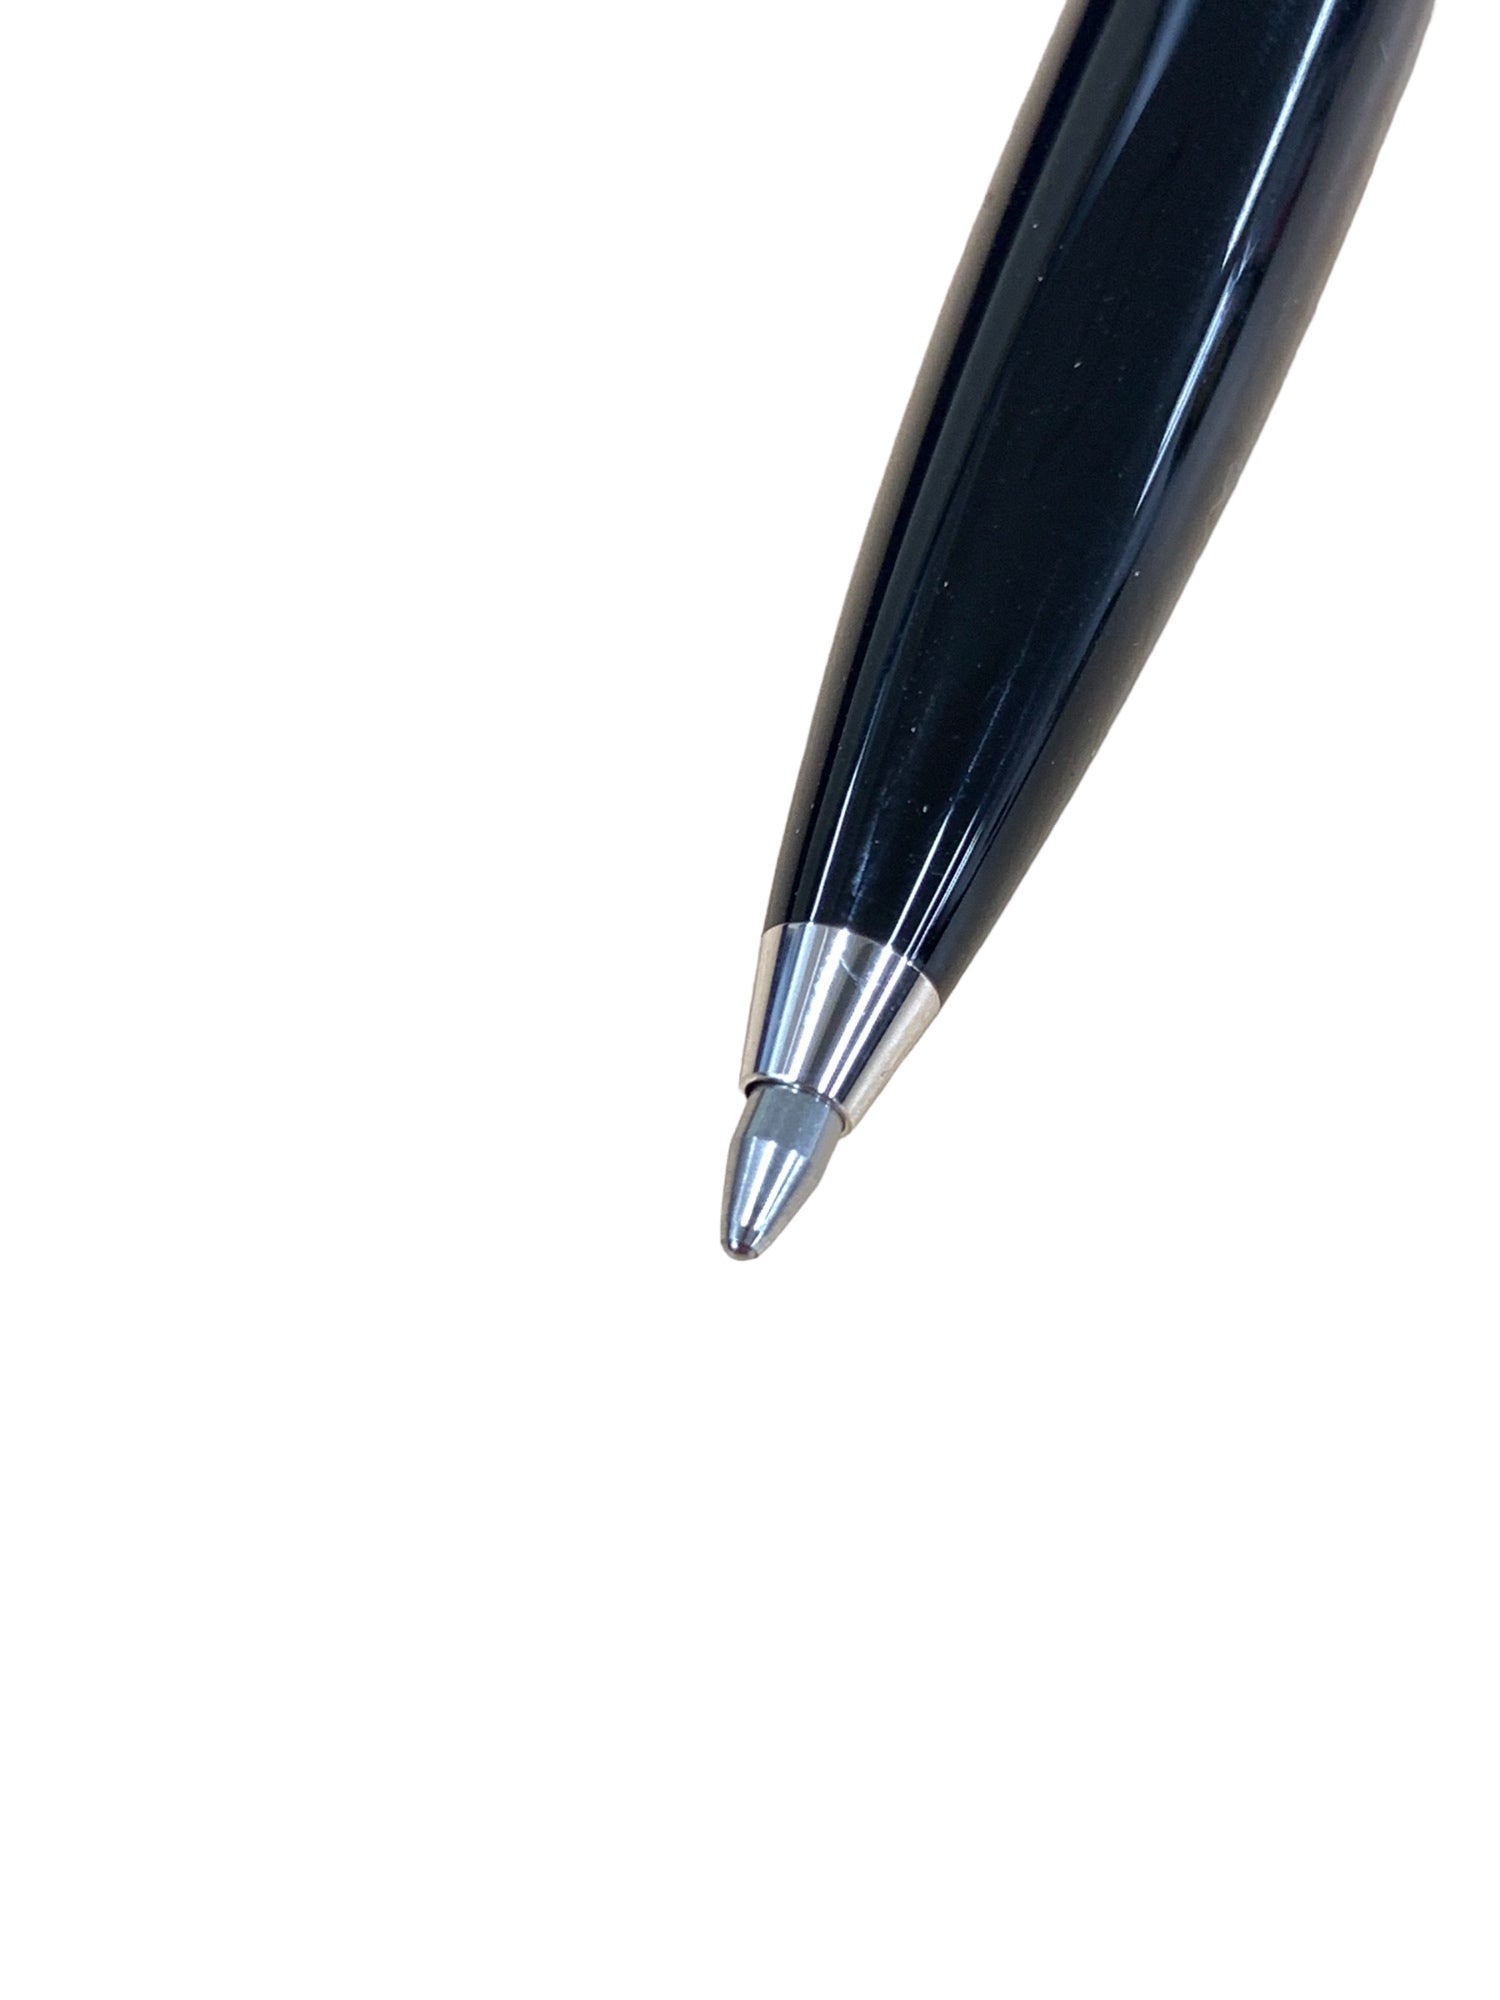 ペリカン スーベレーン K405 ボールペン ブルー ストライプ 縦縞 